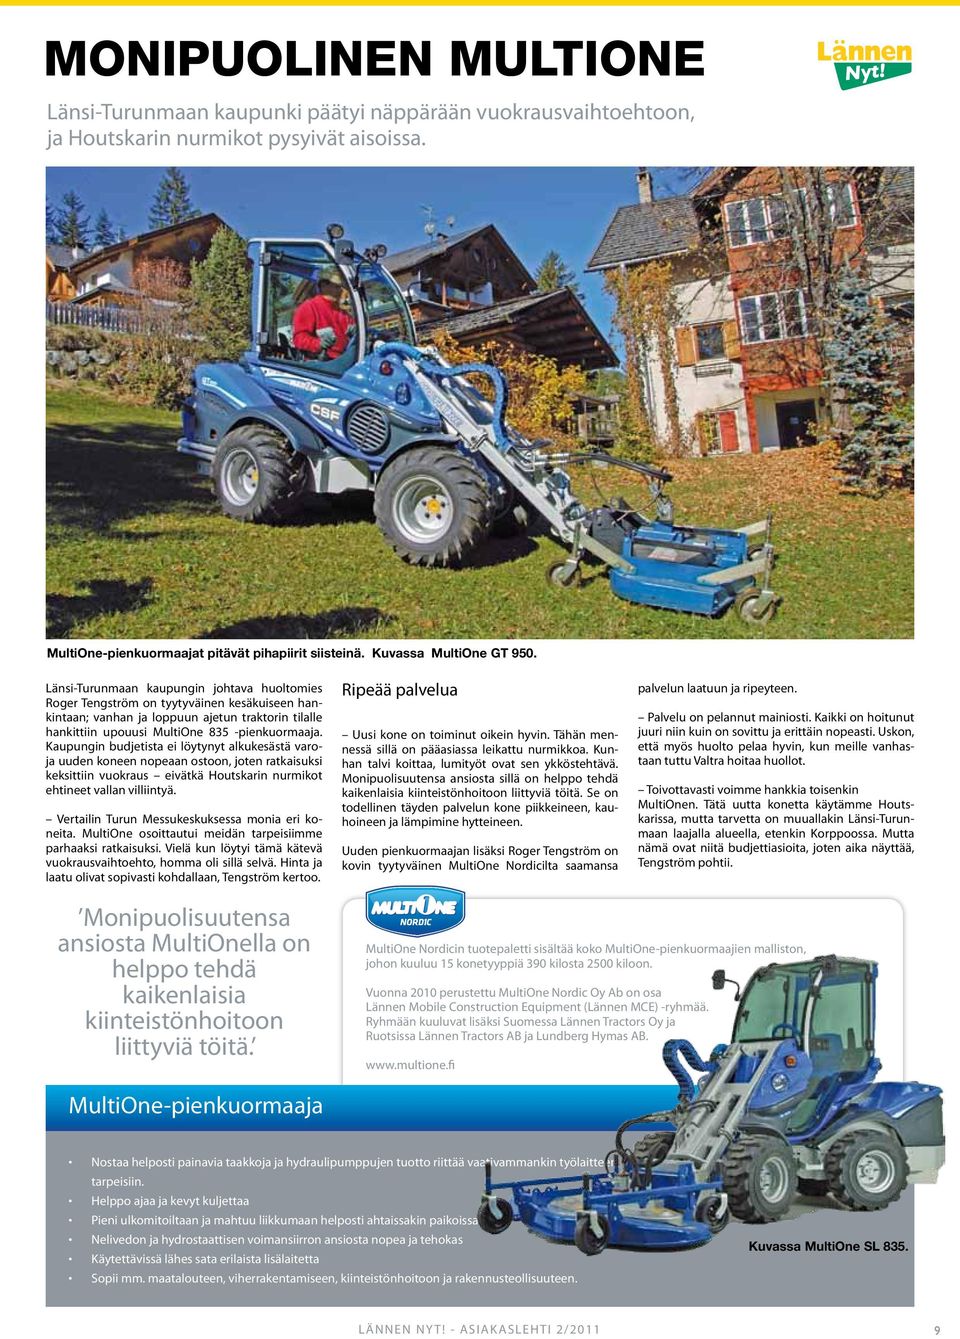 Länsi-Turunmaan kaupungin johtava huoltomies Roger Tengström on tyytyväinen kesäkuiseen hankintaan; vanhan ja loppuun ajetun traktorin tilalle hankittiin upouusi MultiOne 835 -pienkuormaaja.